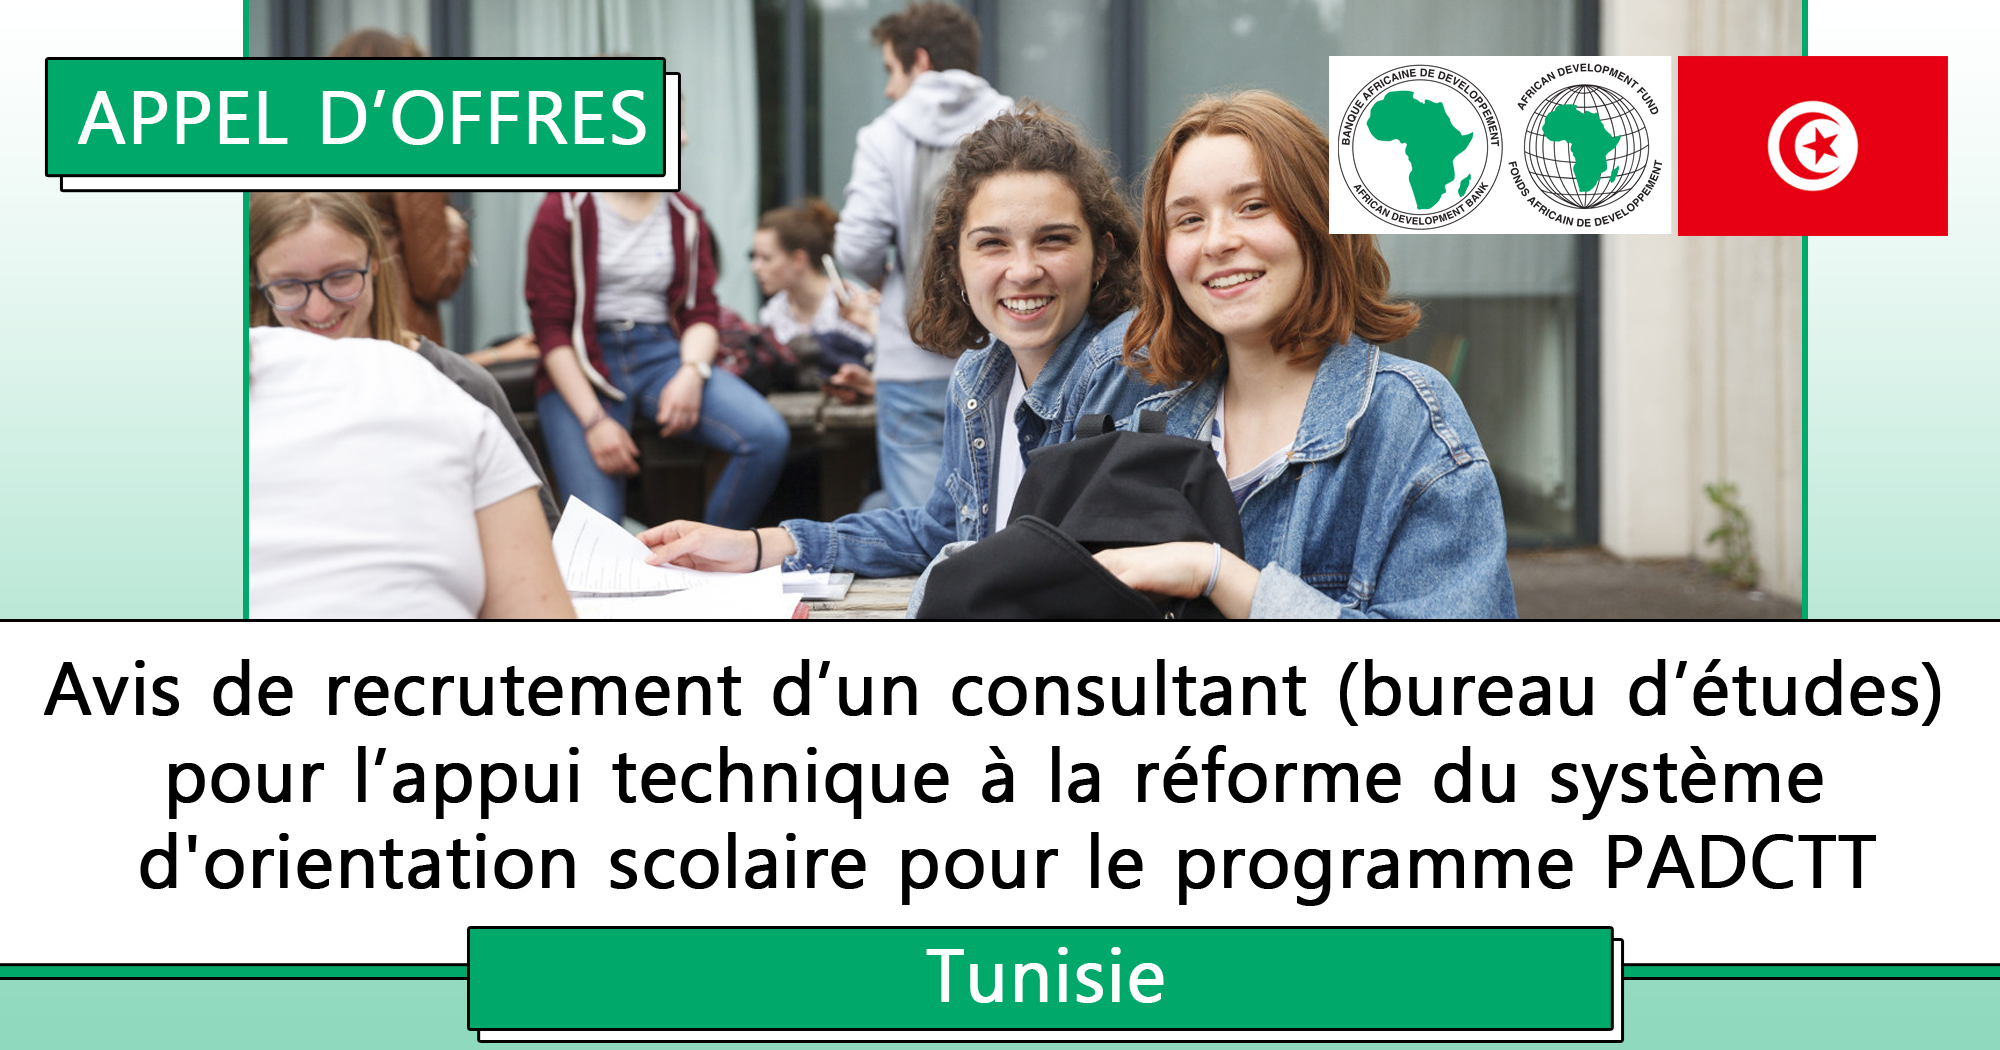 République de Tunisie  Banque africaine de développement